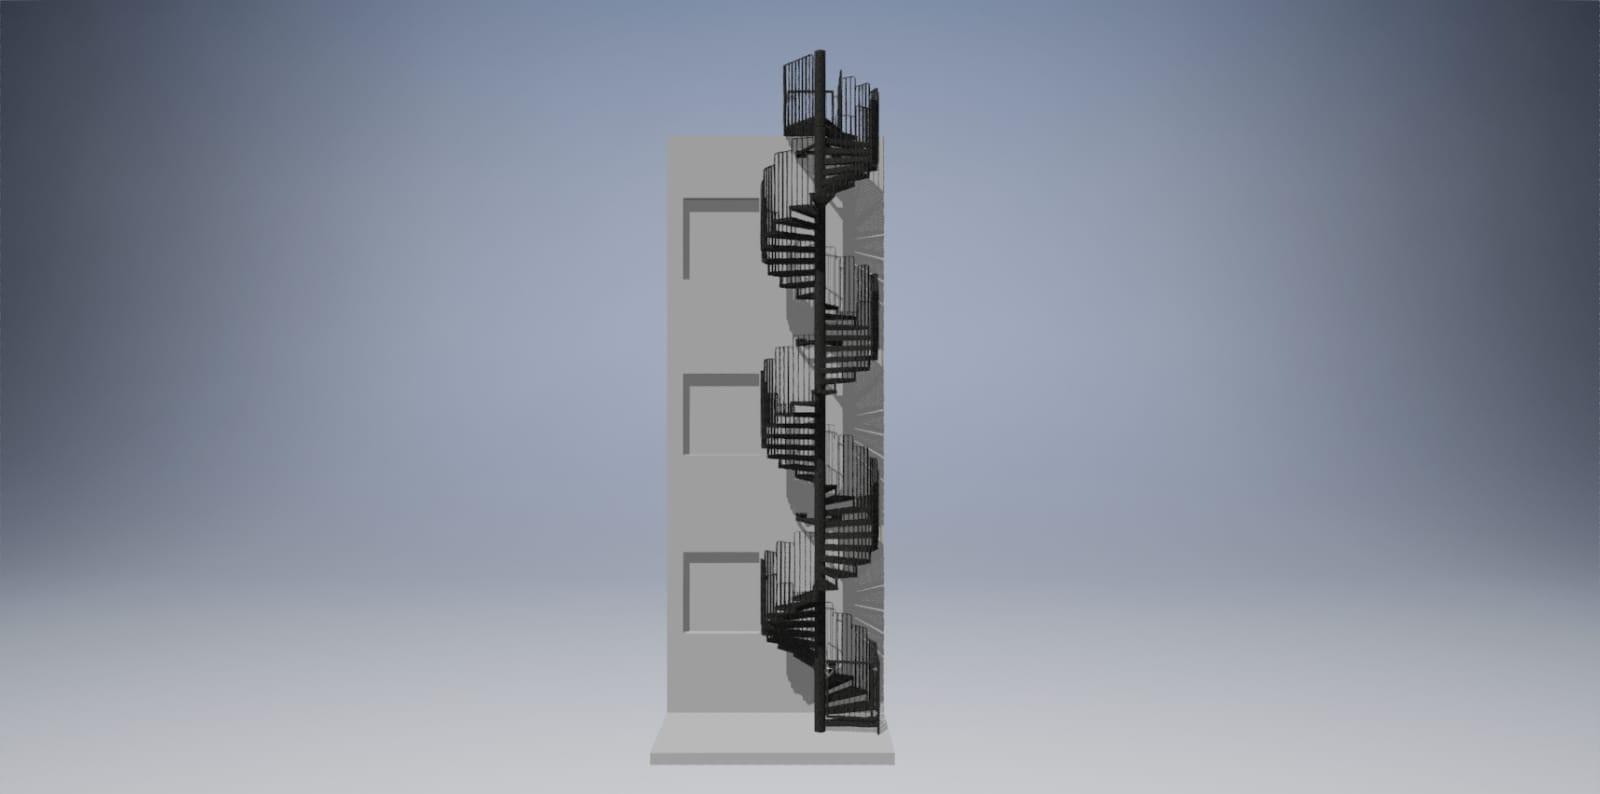 Eine Außentreppe mit einer originellen spiralförmigen Konstruktion aus graphitfarbenem verzinktem Stahl. Sie besteht aus einer mittig platzierten Säule und spiralförmig angeordneten Stufen und Handläufen. Sie bietet einen bequemen Zugang zu den oberen Stockwerken des Gebäudes auf kleinem Raum. Sie setzen einen interessanten architektonischen und funktionalen Akzent.